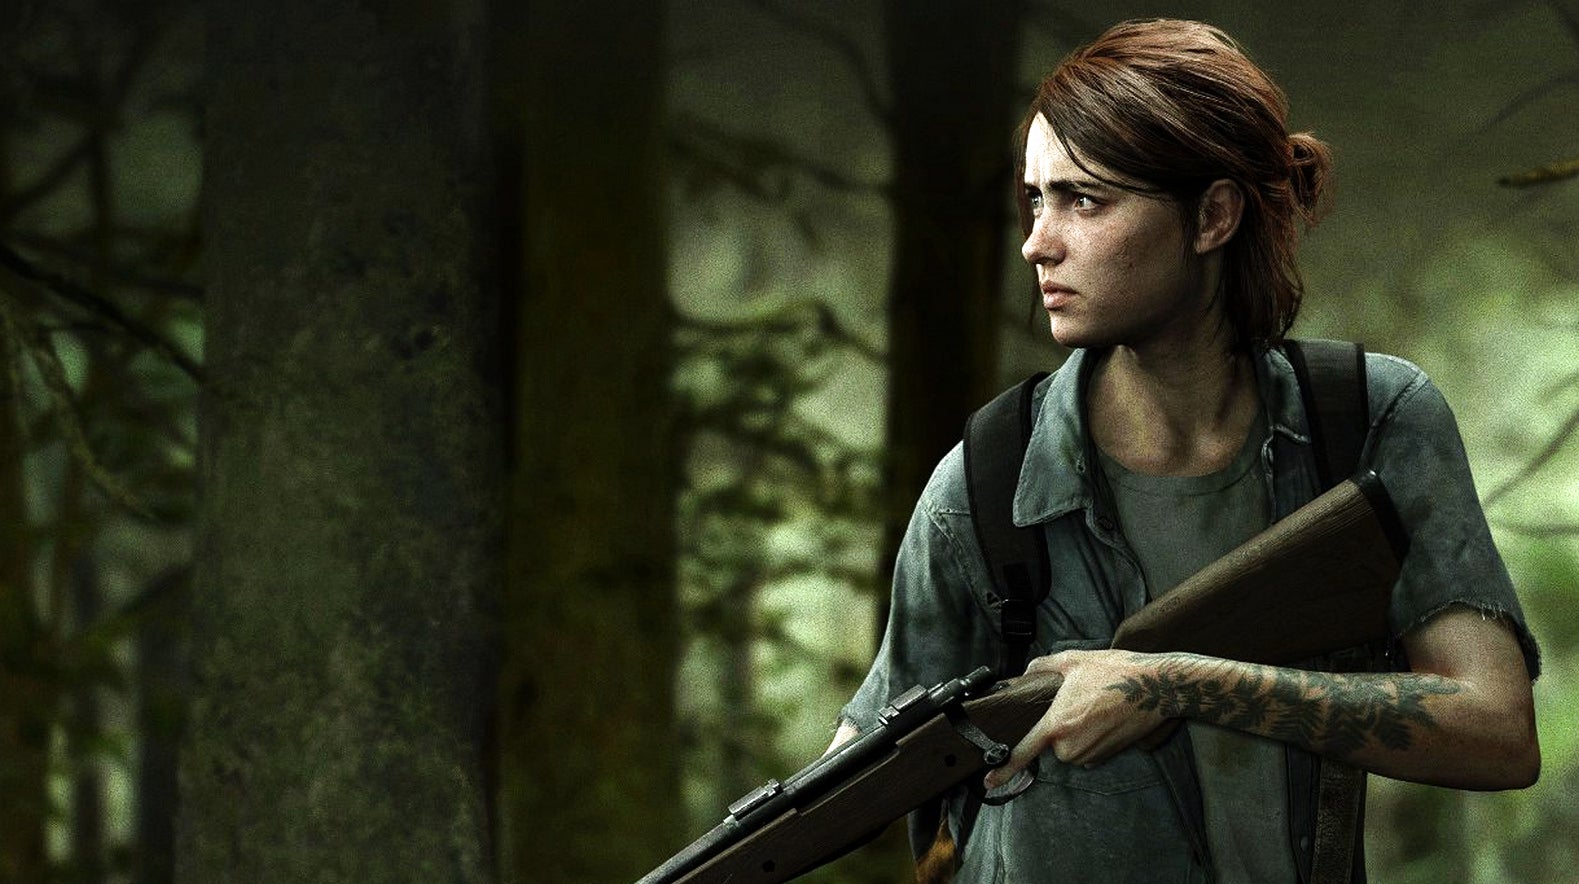 Bilder zu The Last of Us: Mit der Serie ist nicht vor 2023 zu rechnen